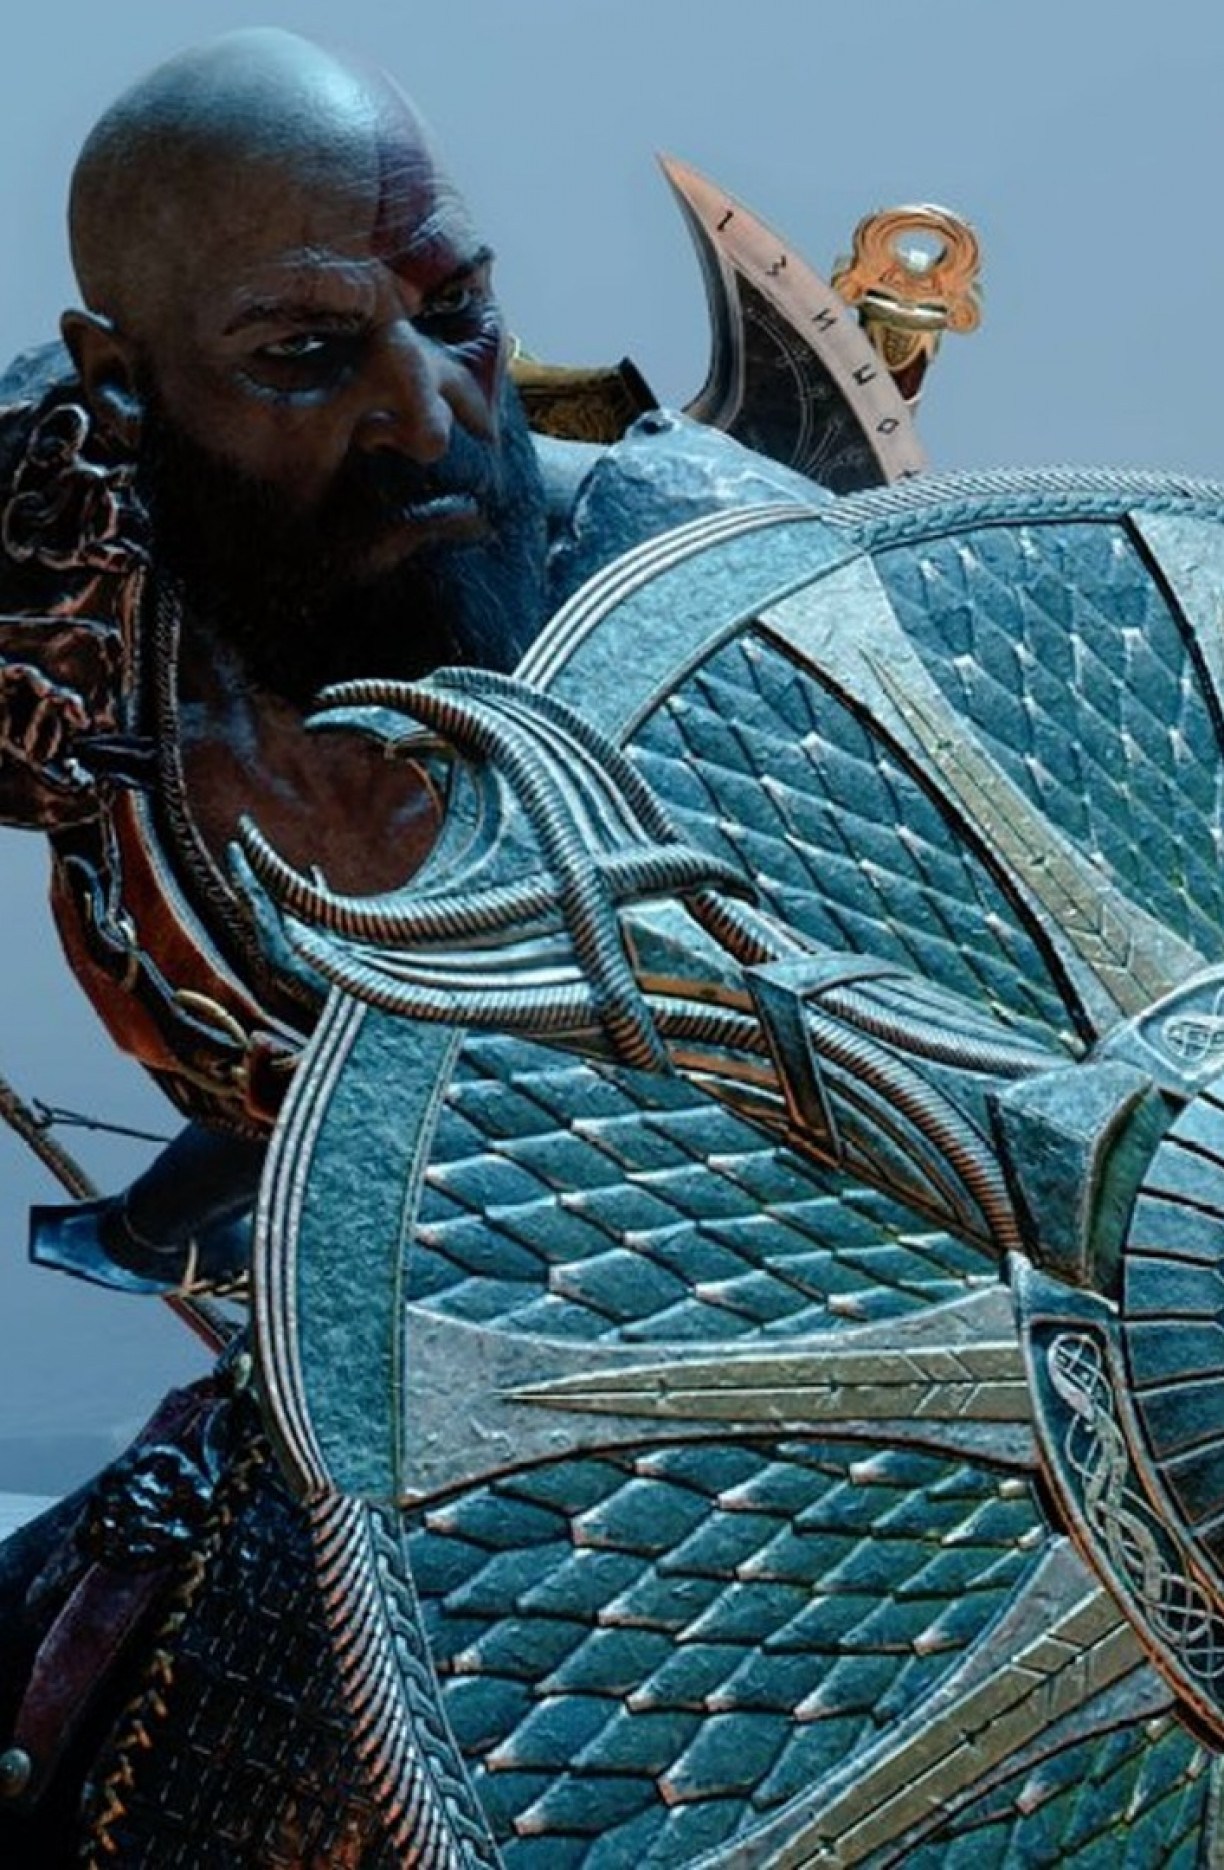 God of War Ragnarok: Quanto tempo leva para zerar o game?